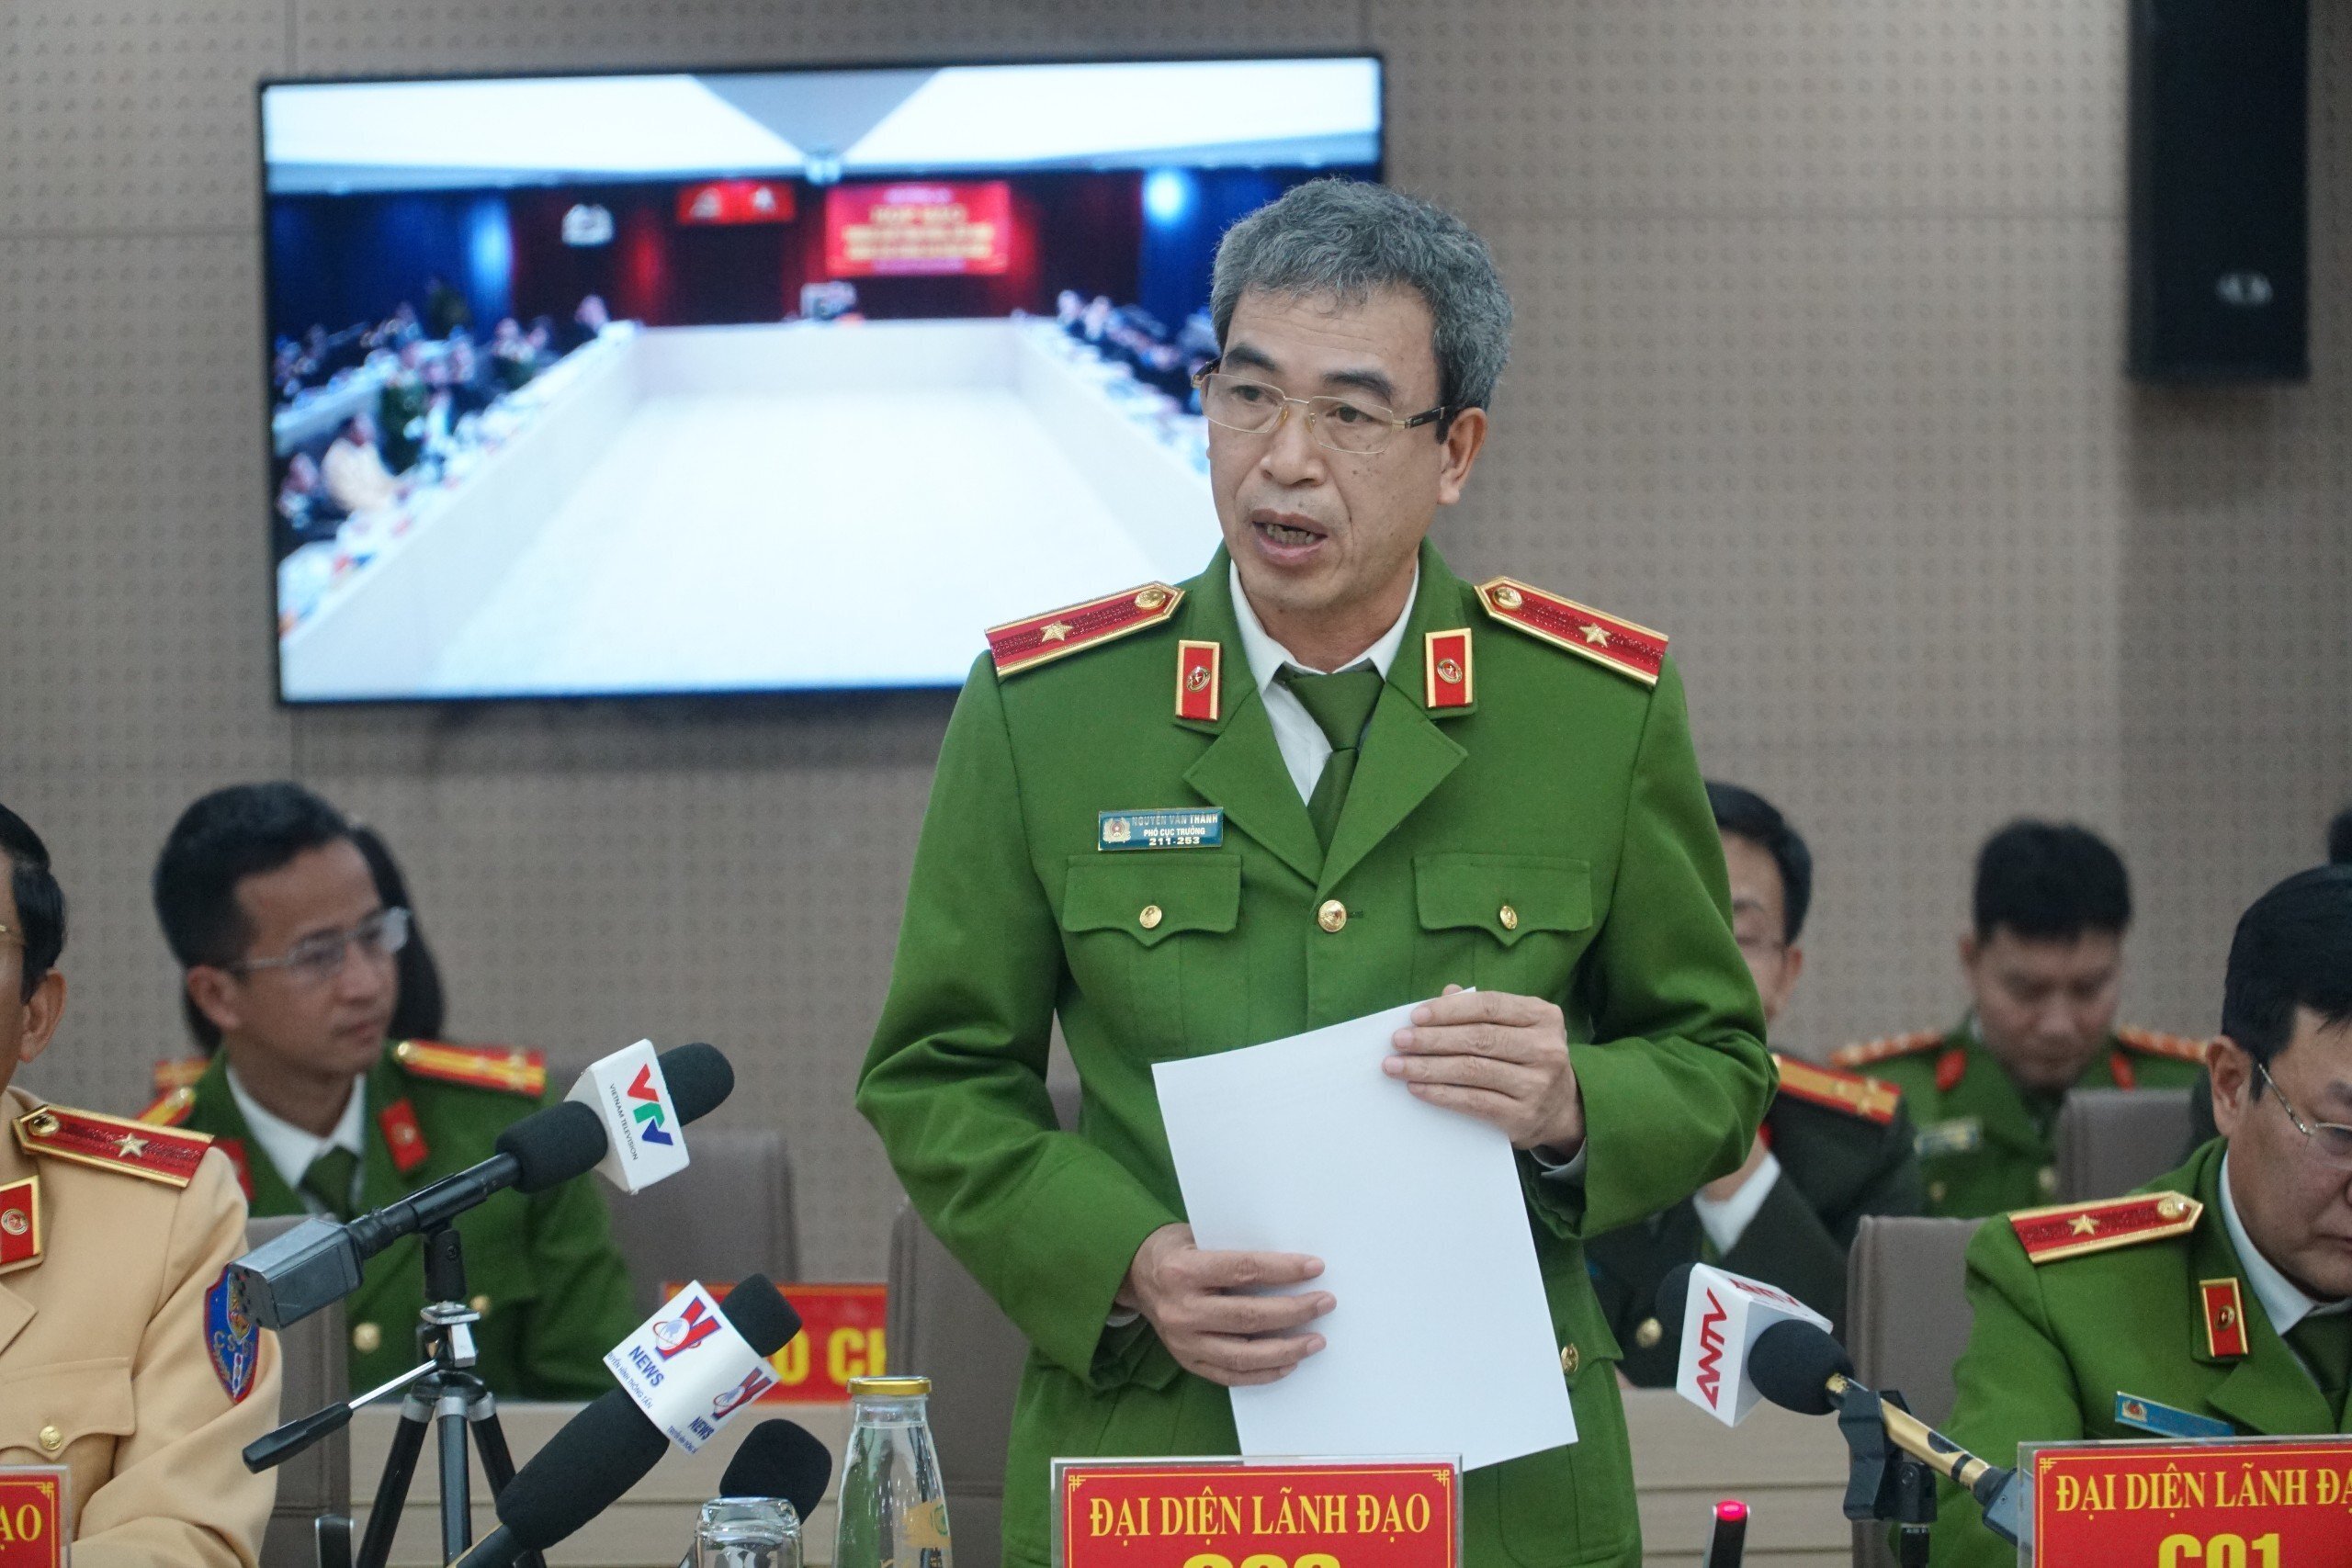 Thiếu tướng Nguyễn Văn Thành thông tin tại họp báo.